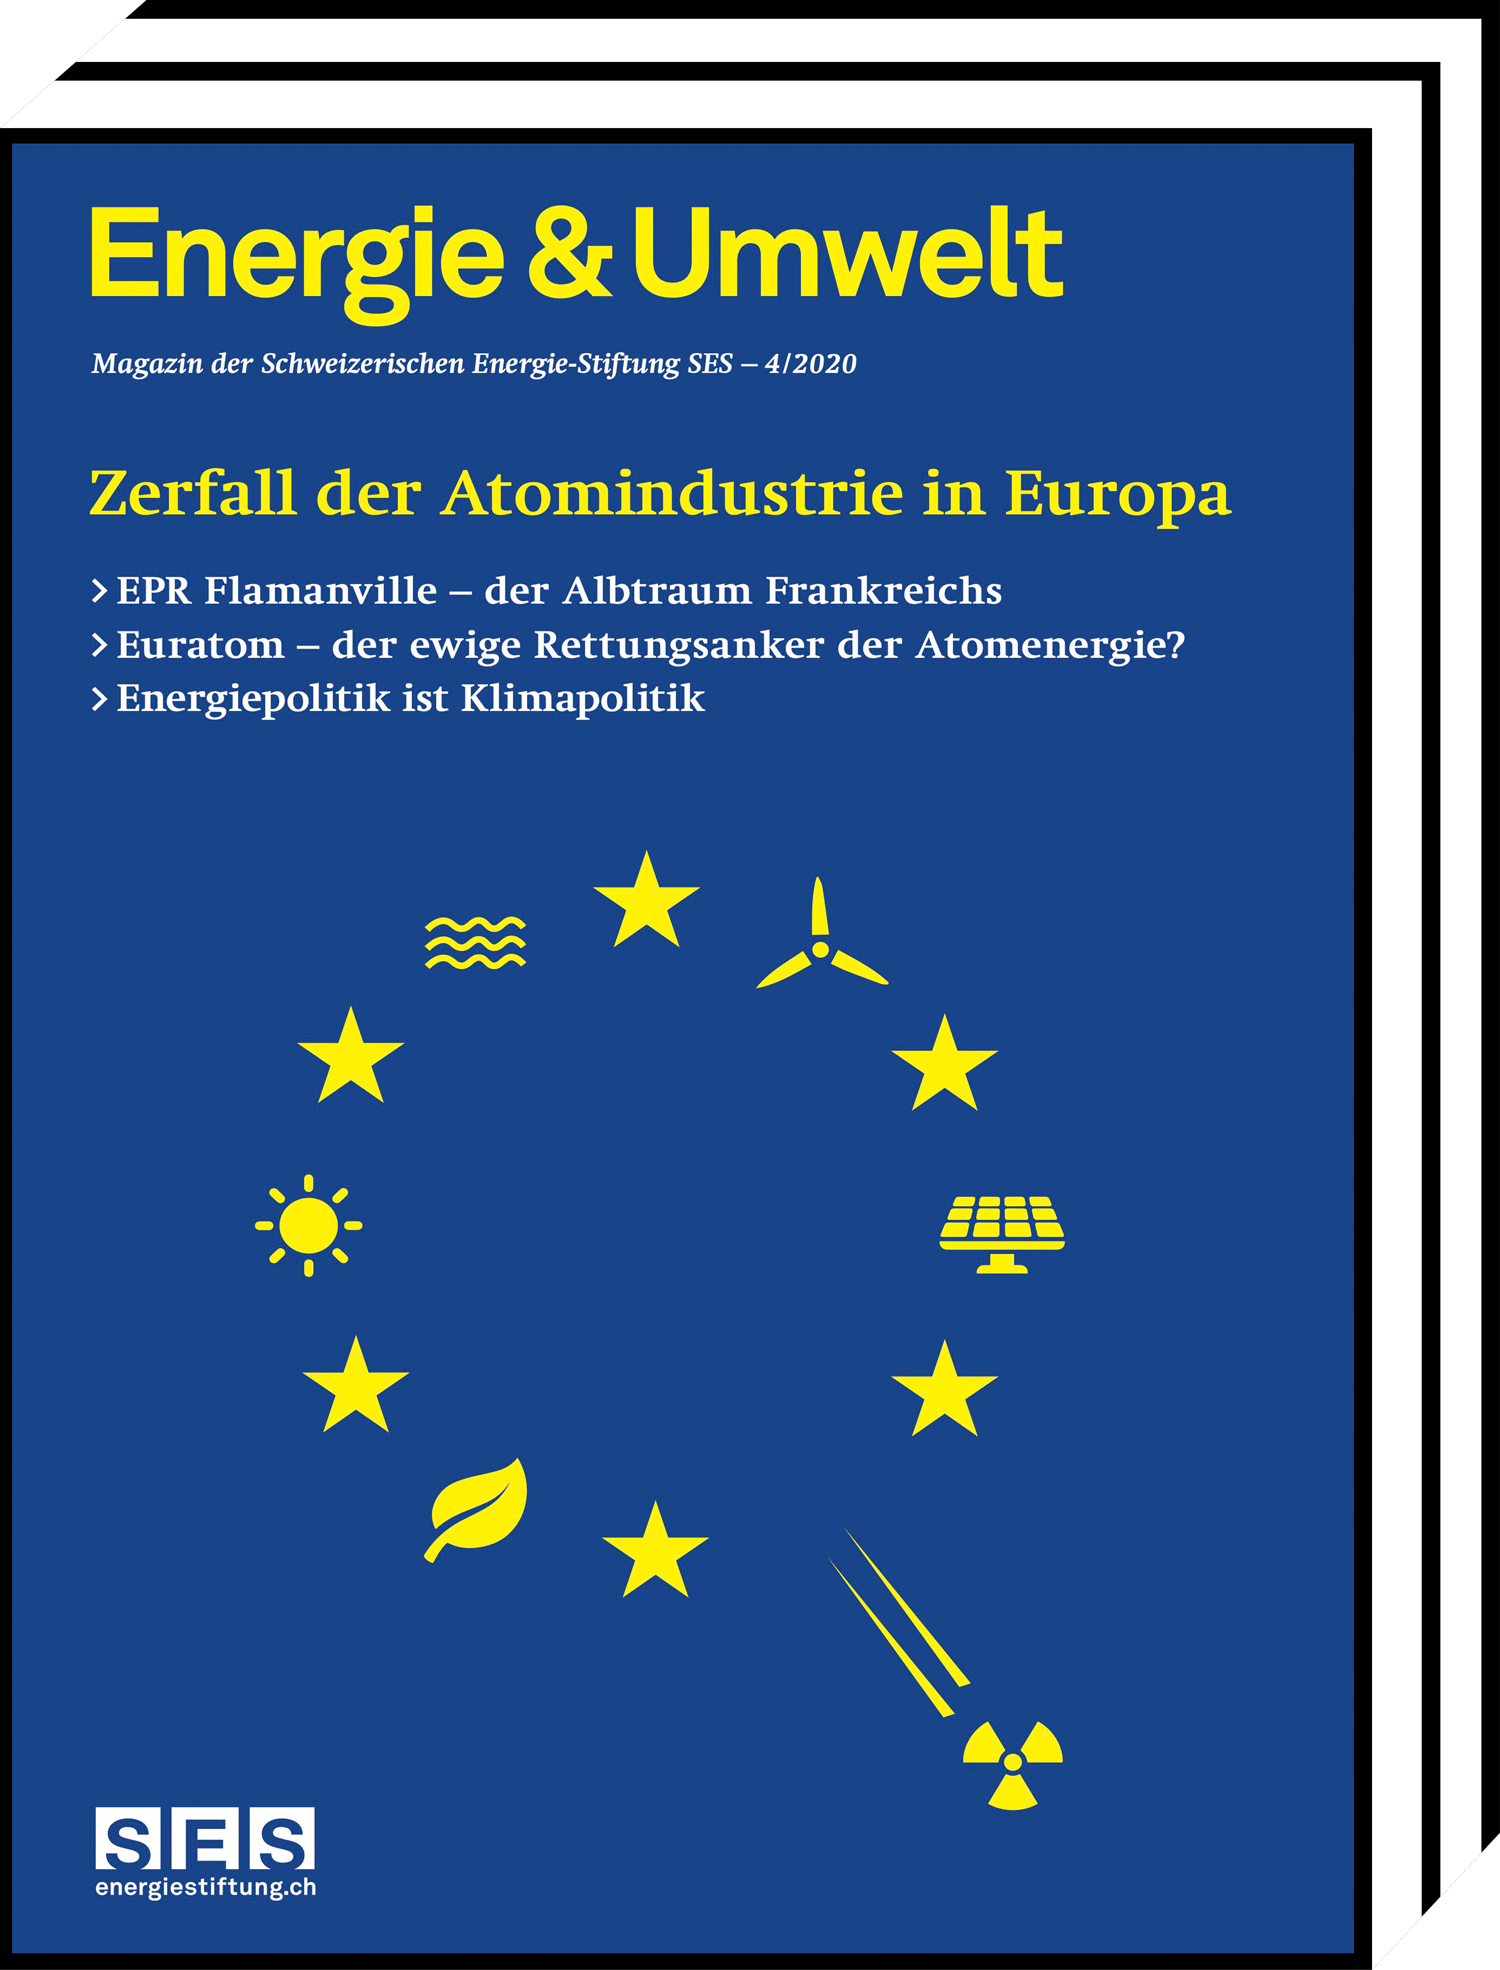 Energie und Umwelt - Zerfall der Atomindustrie in Europa